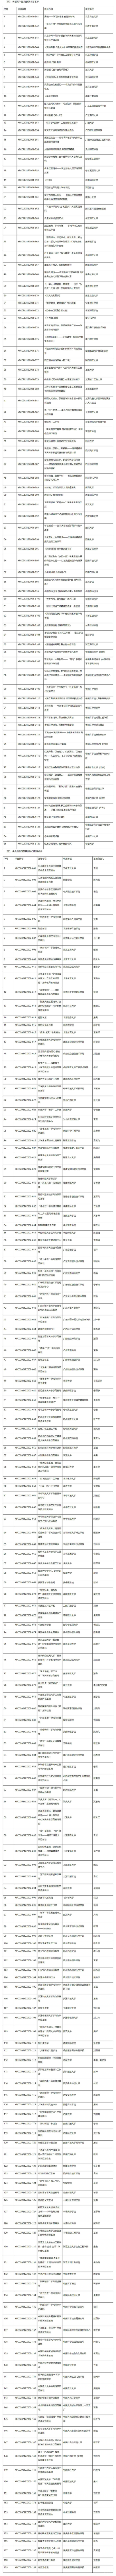 中国科学技术协会 综合 2021年度学风建设资助计划项目立项名单1.jpg